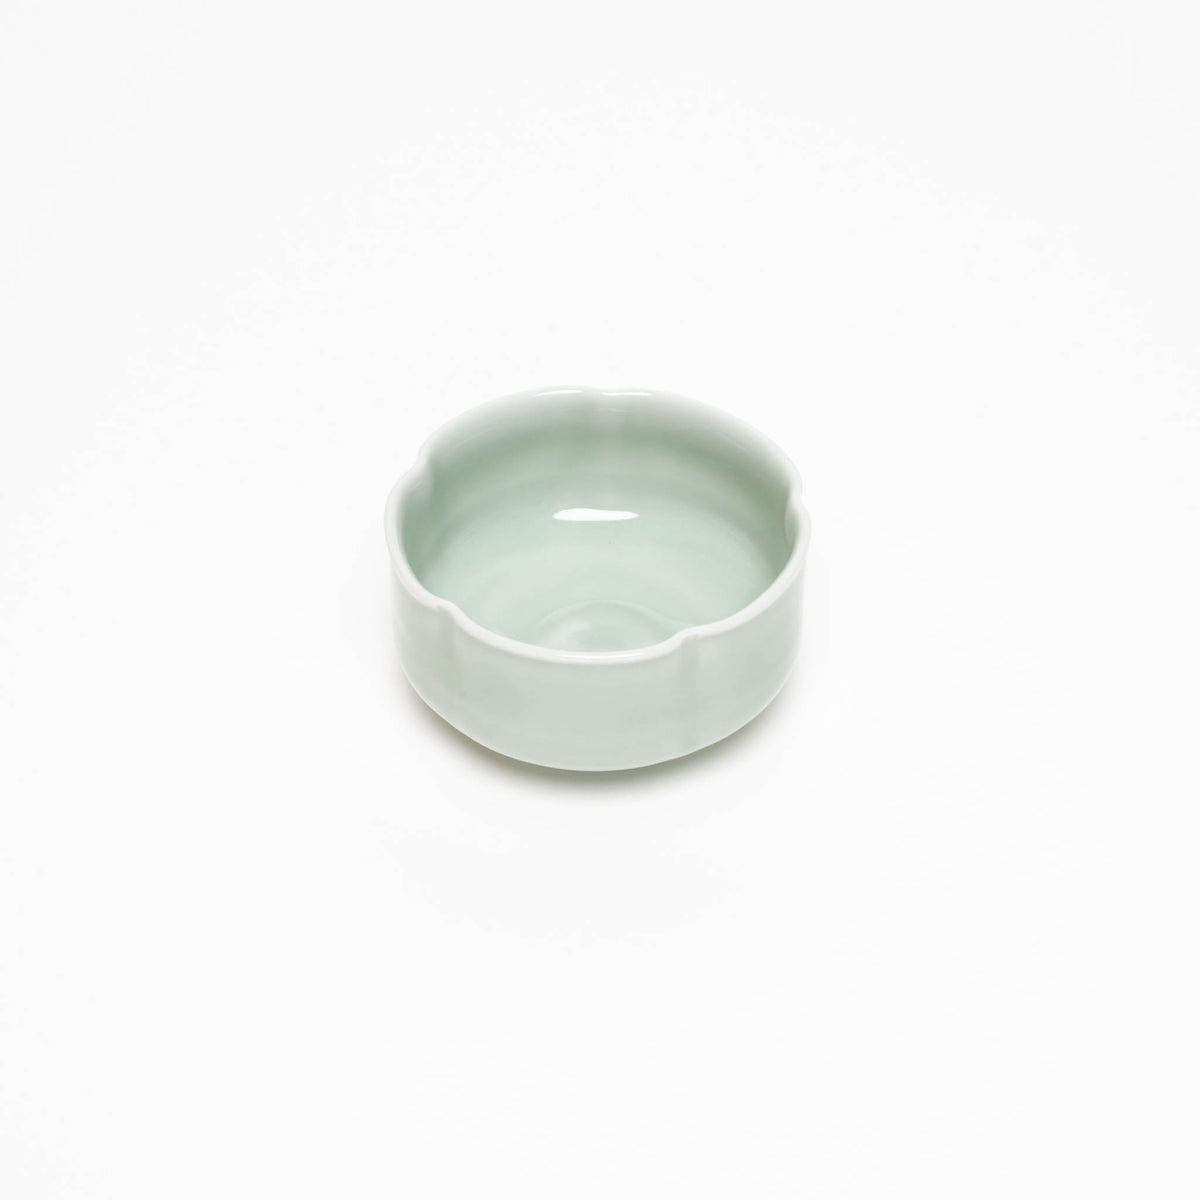 Natural porcelain celadon bowls star/flower shaped